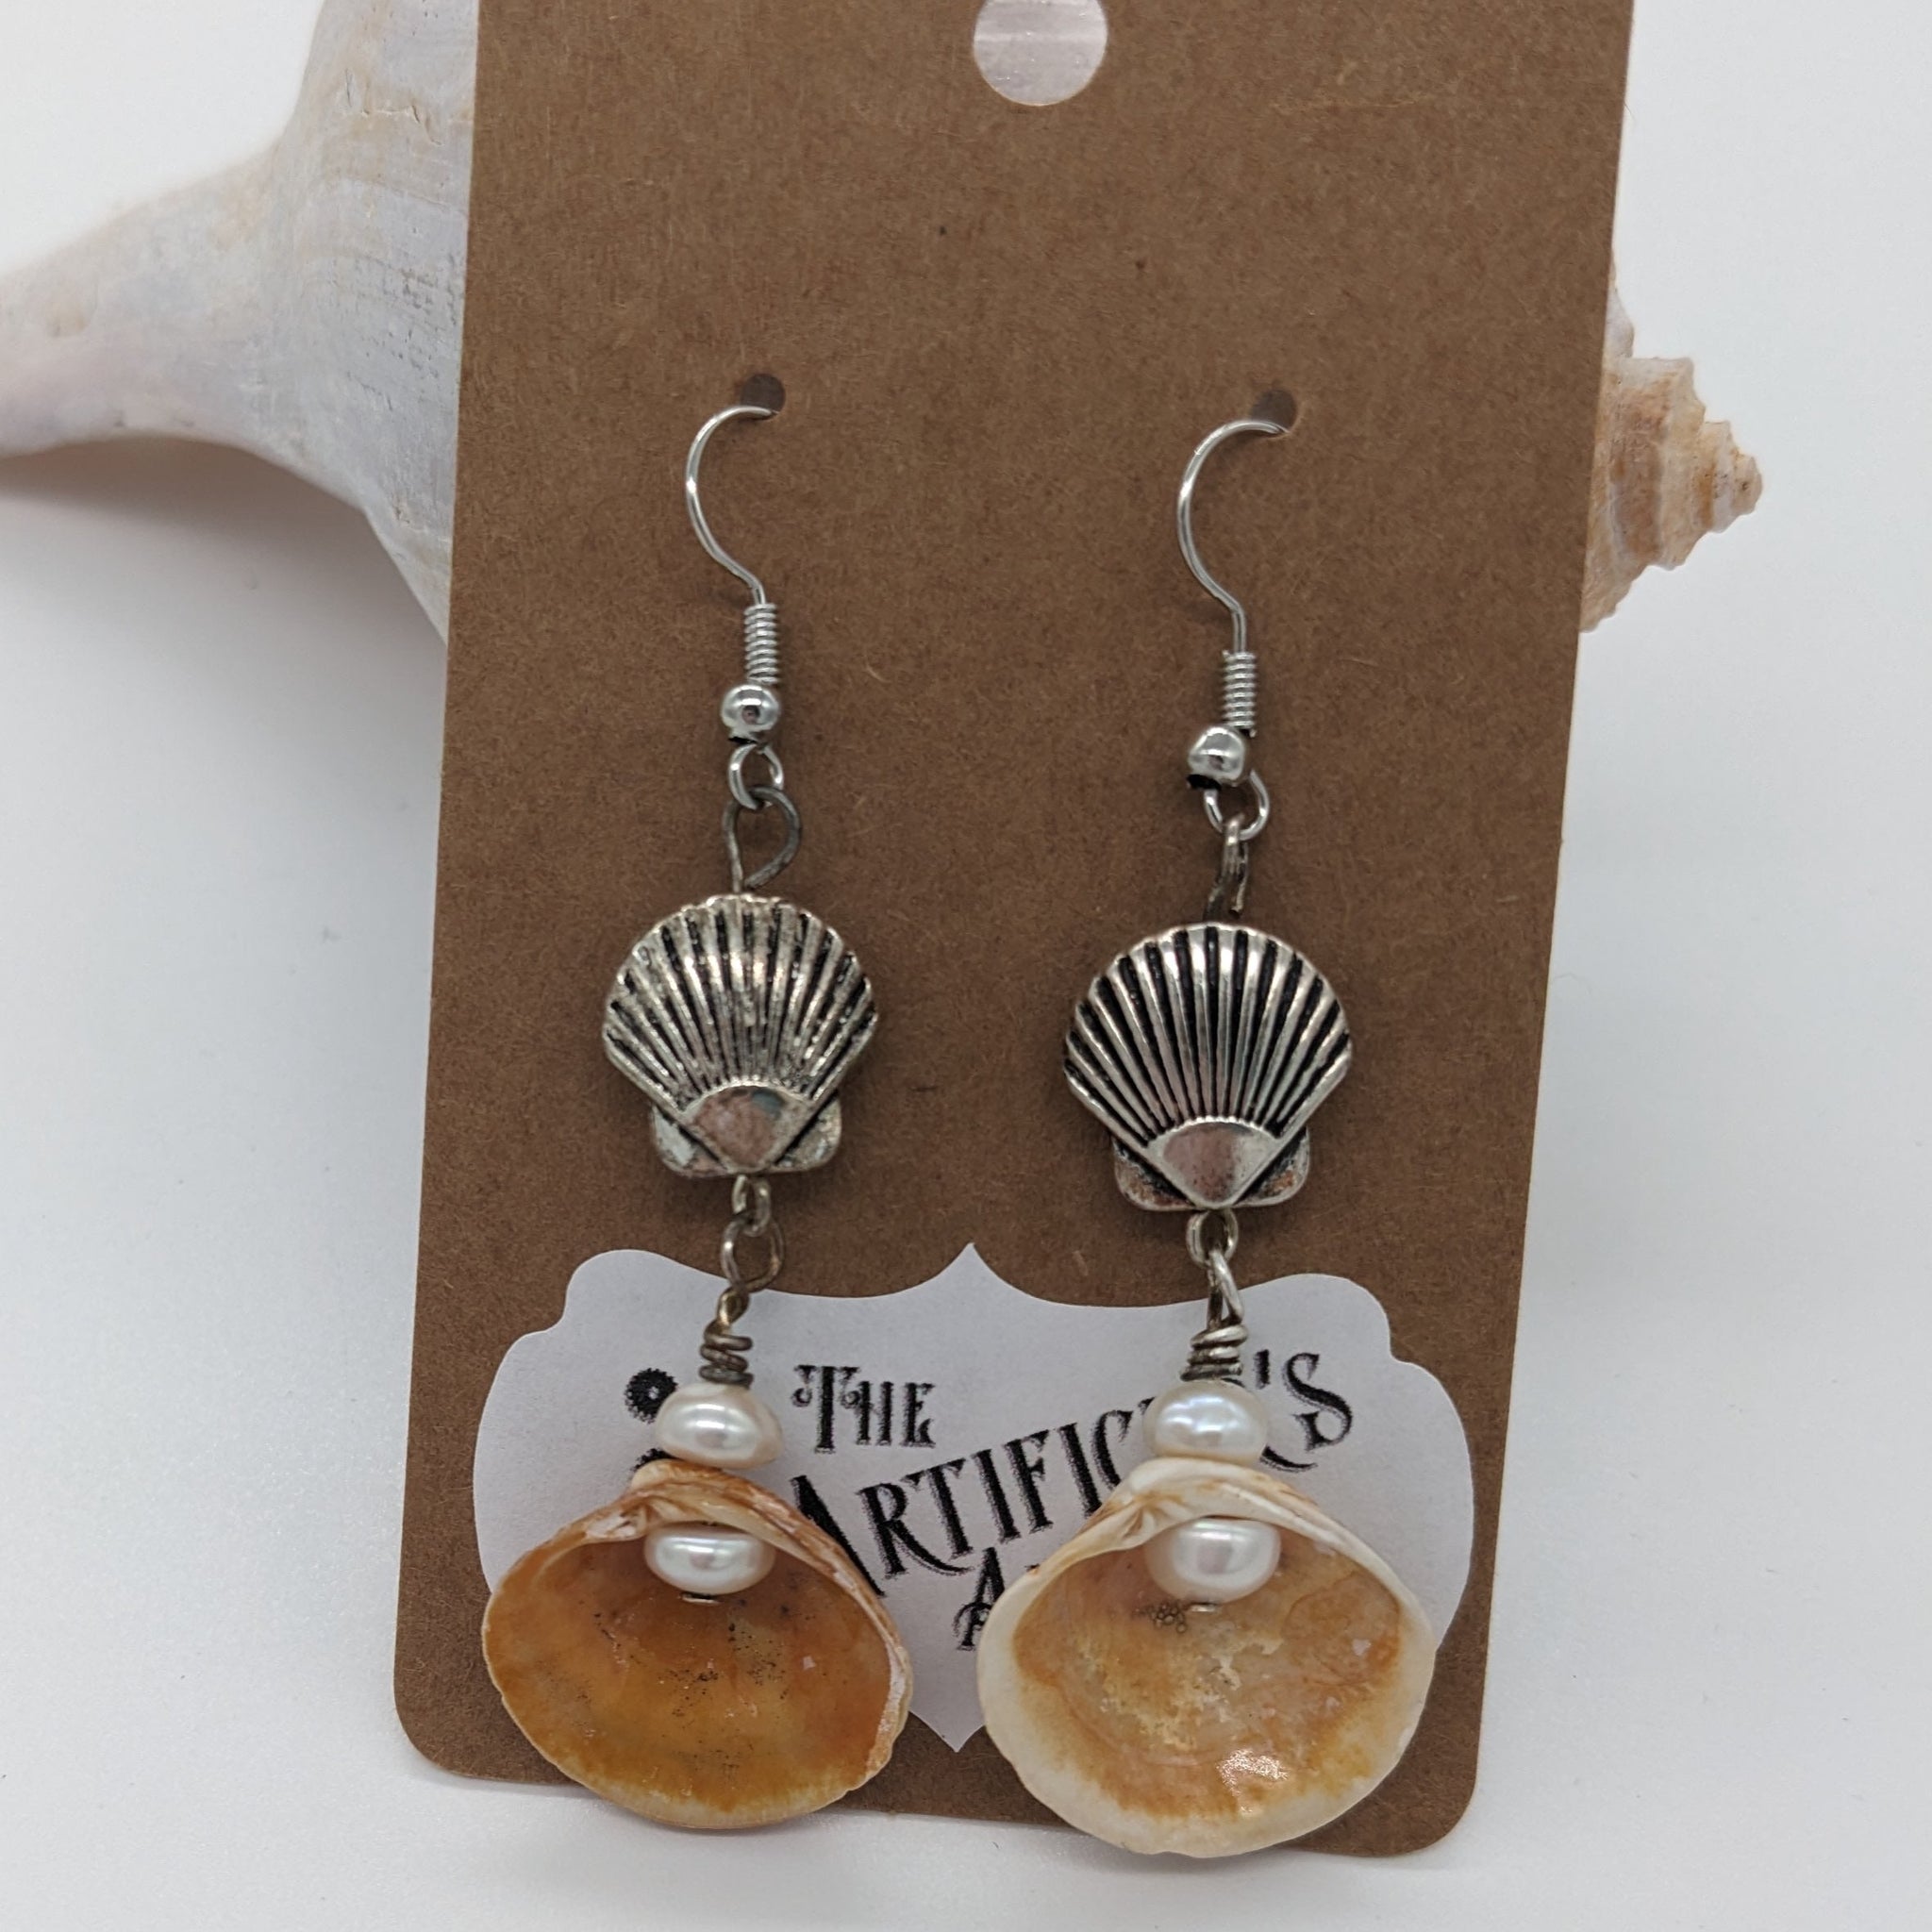 Shell-ception Dangle Earrings